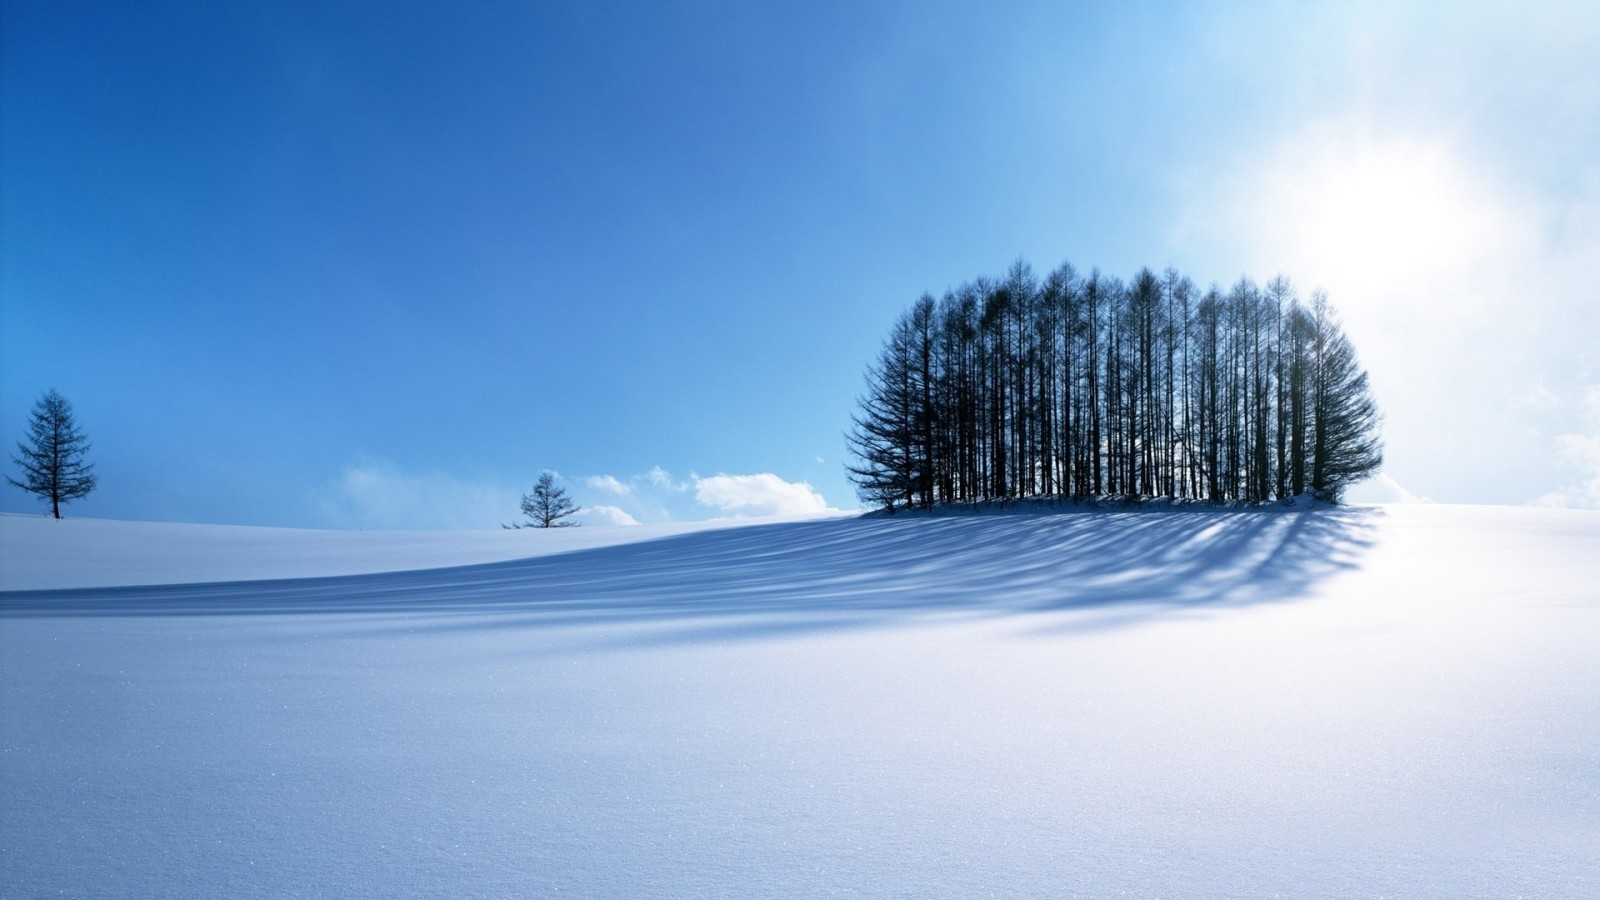 หิมะ, สีน้ำเงิน, ภูเขา, ฤดูหนาว, ถนน, ต้นไม้, ท้องฟ้า, ดวงอาทิตย์